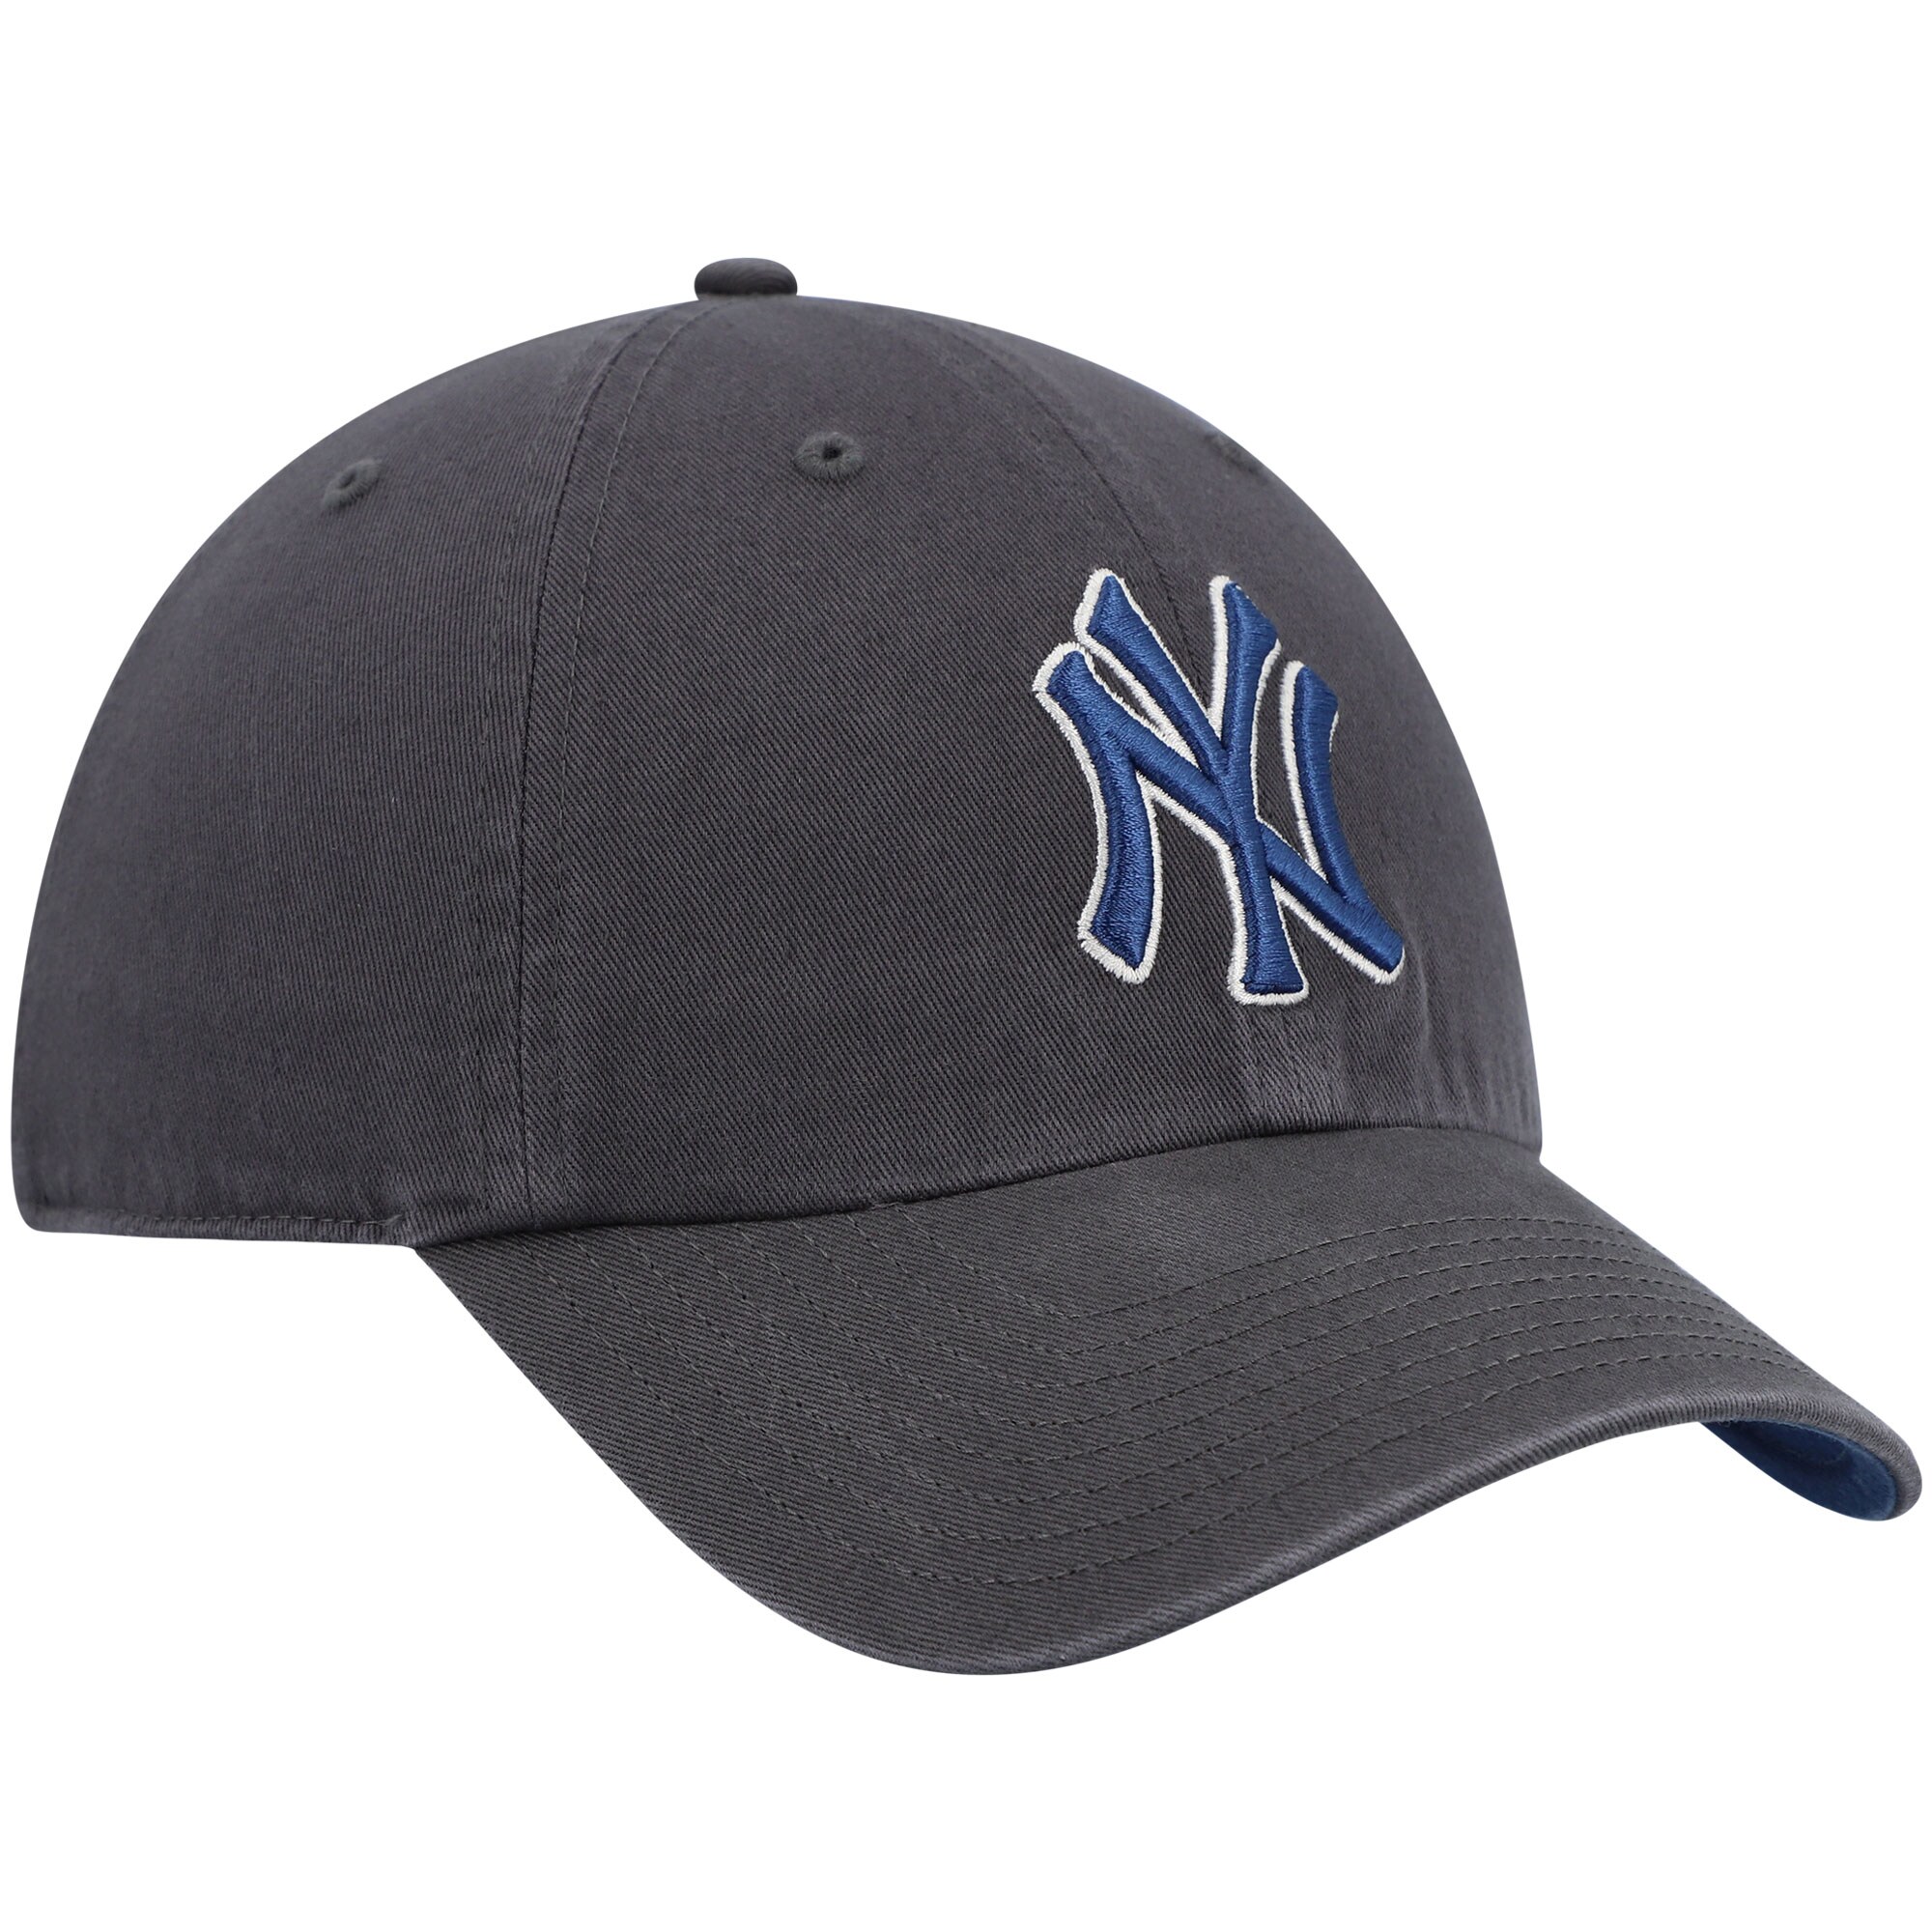 Yankees Hat Png - Yankees Hat, Transparent Png - 960x596(#1602187